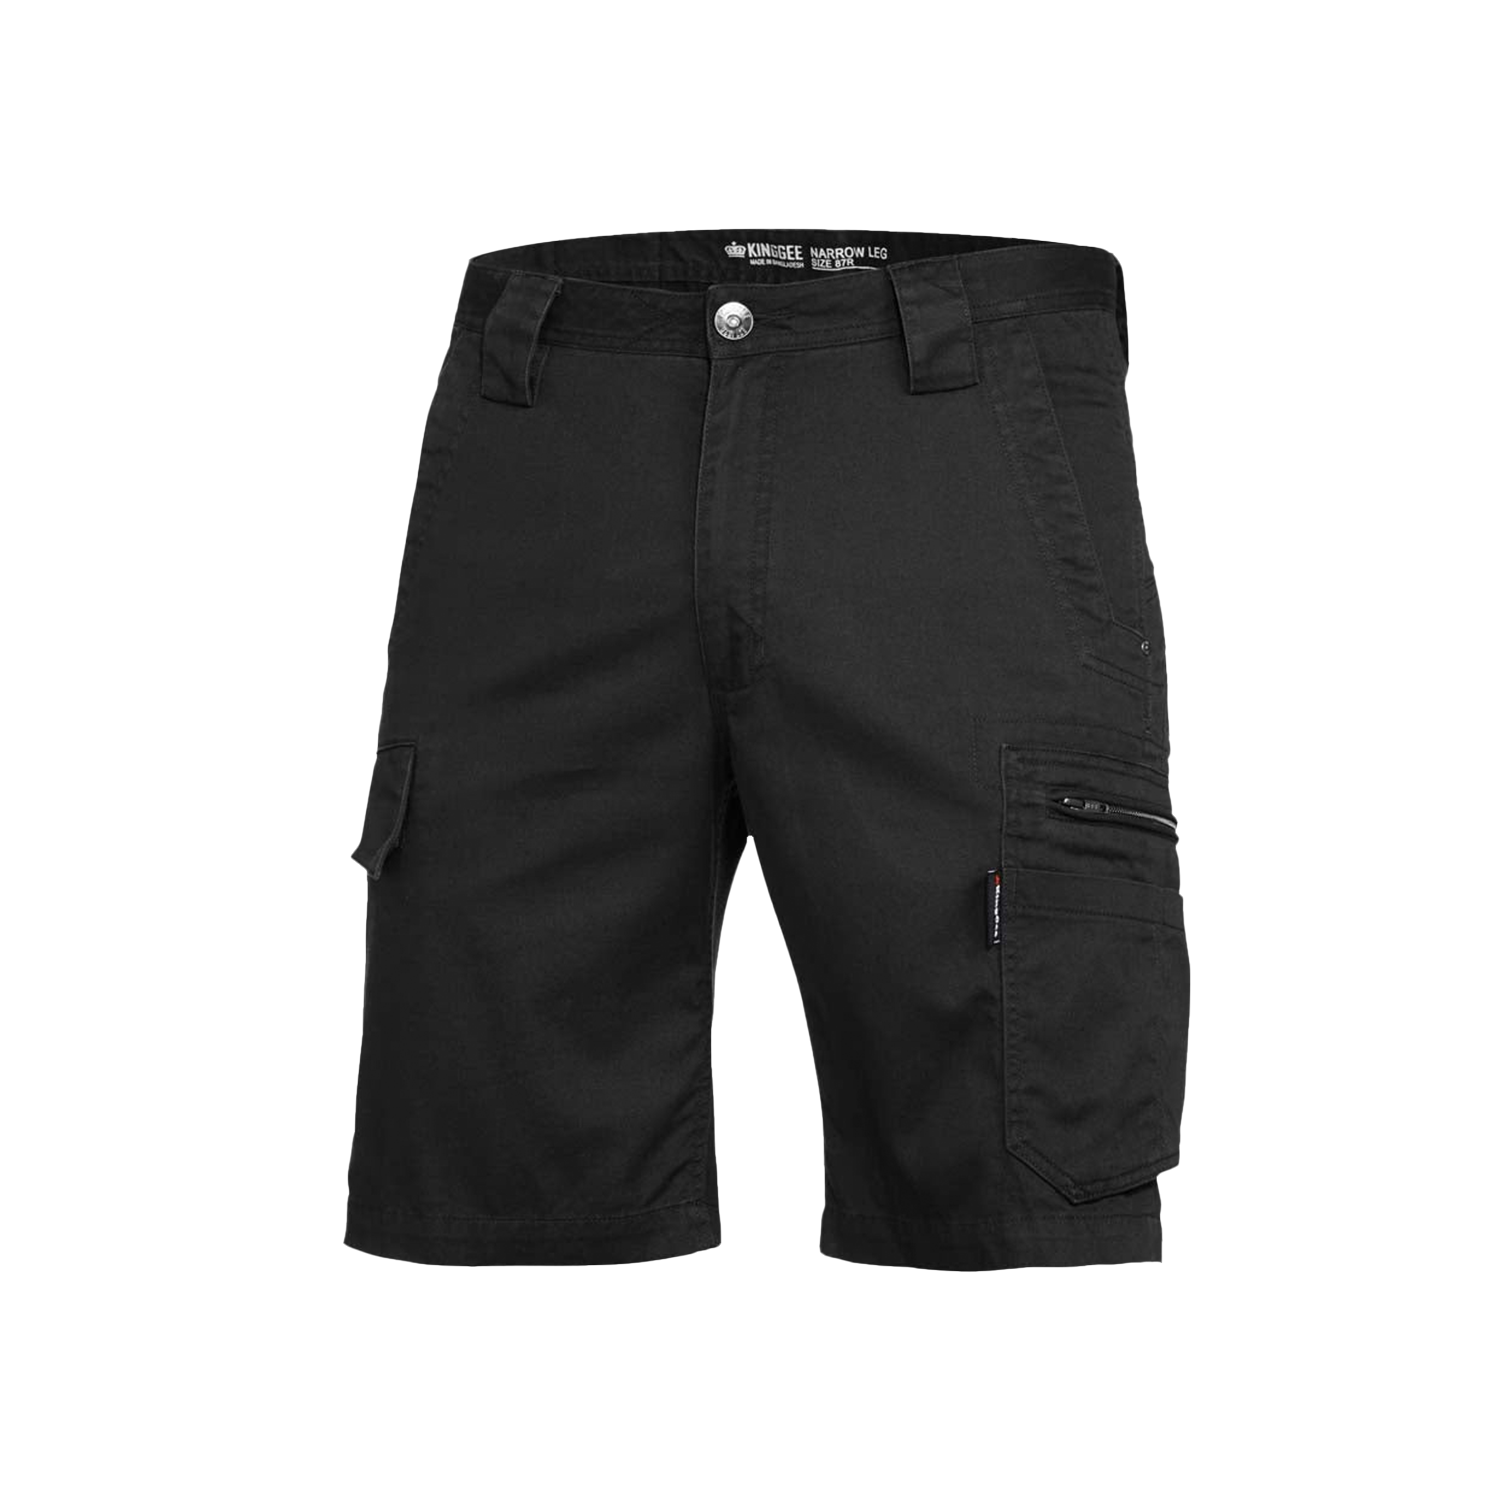 KingGee Men's Tradie Summer Shorts - Black - Totally Workwear